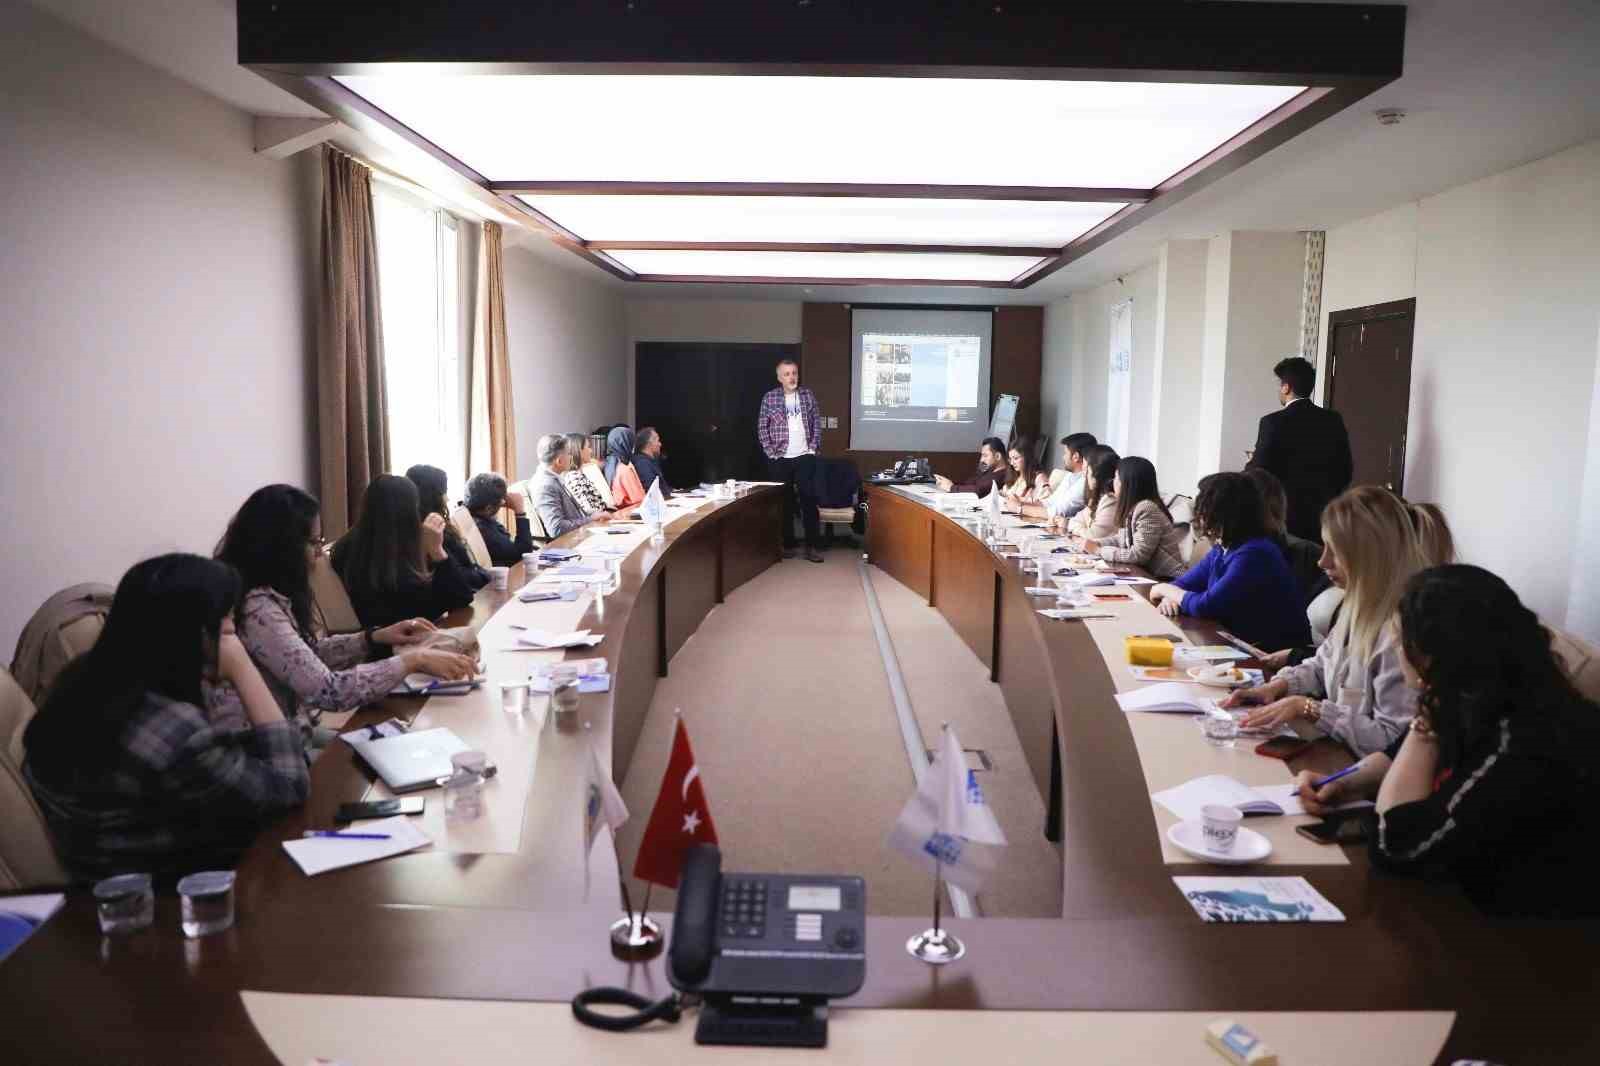 Adana Büyükşehir Belediyesi, kadın erkek eşitliğinin sağlanmasına yönelik personel eğitimlerine devam ediyor